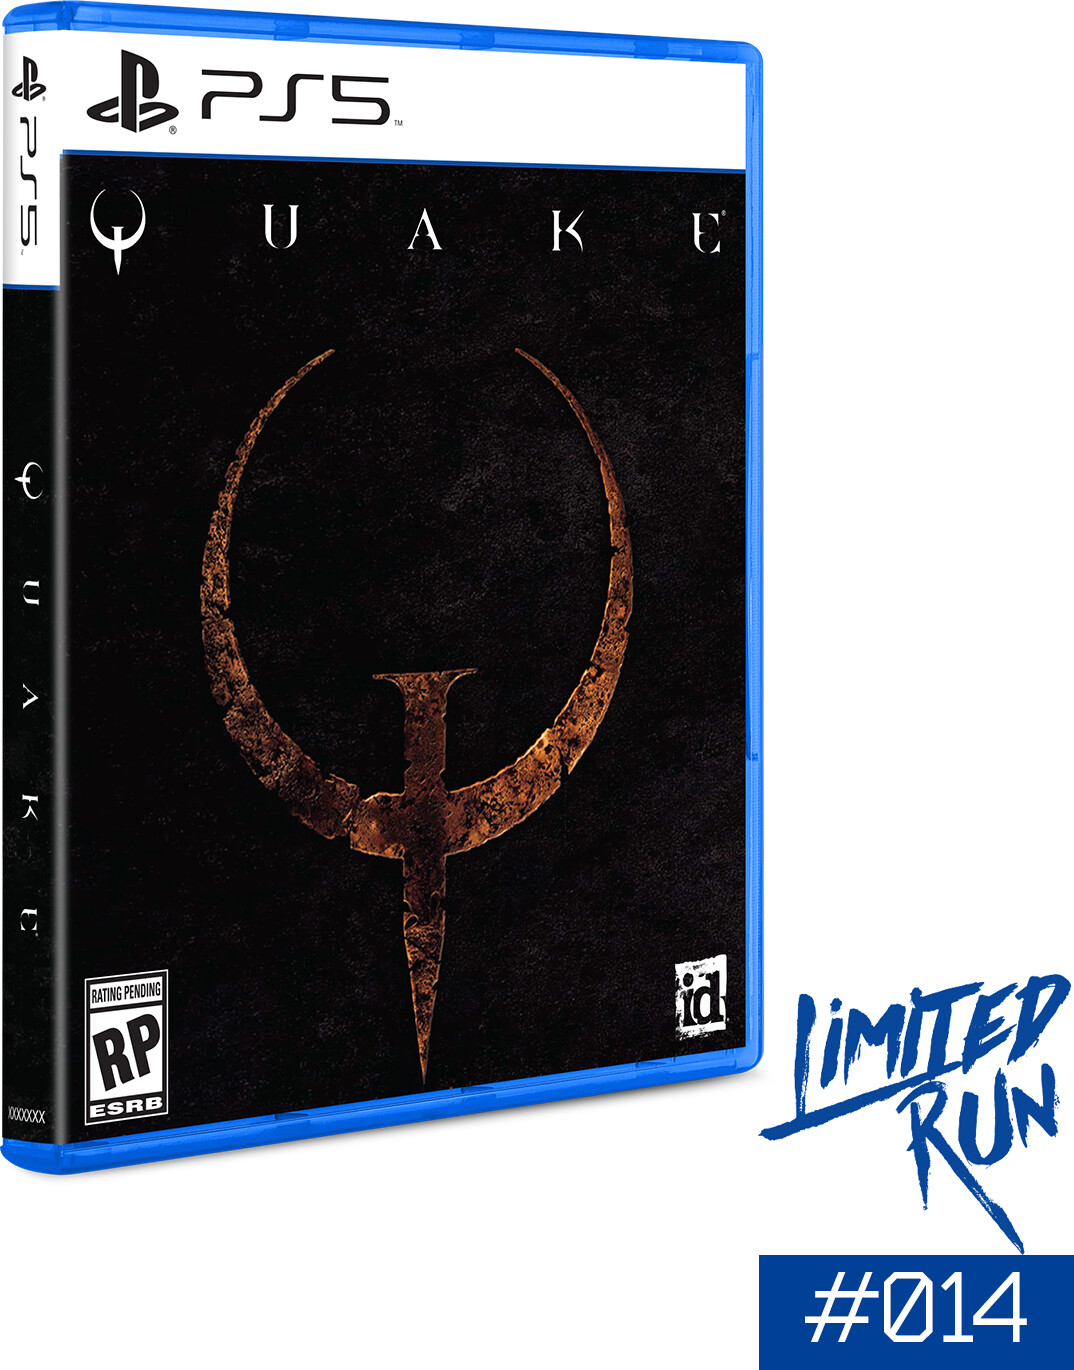 Billede af Quake (limited Run #014) (import) - PS5